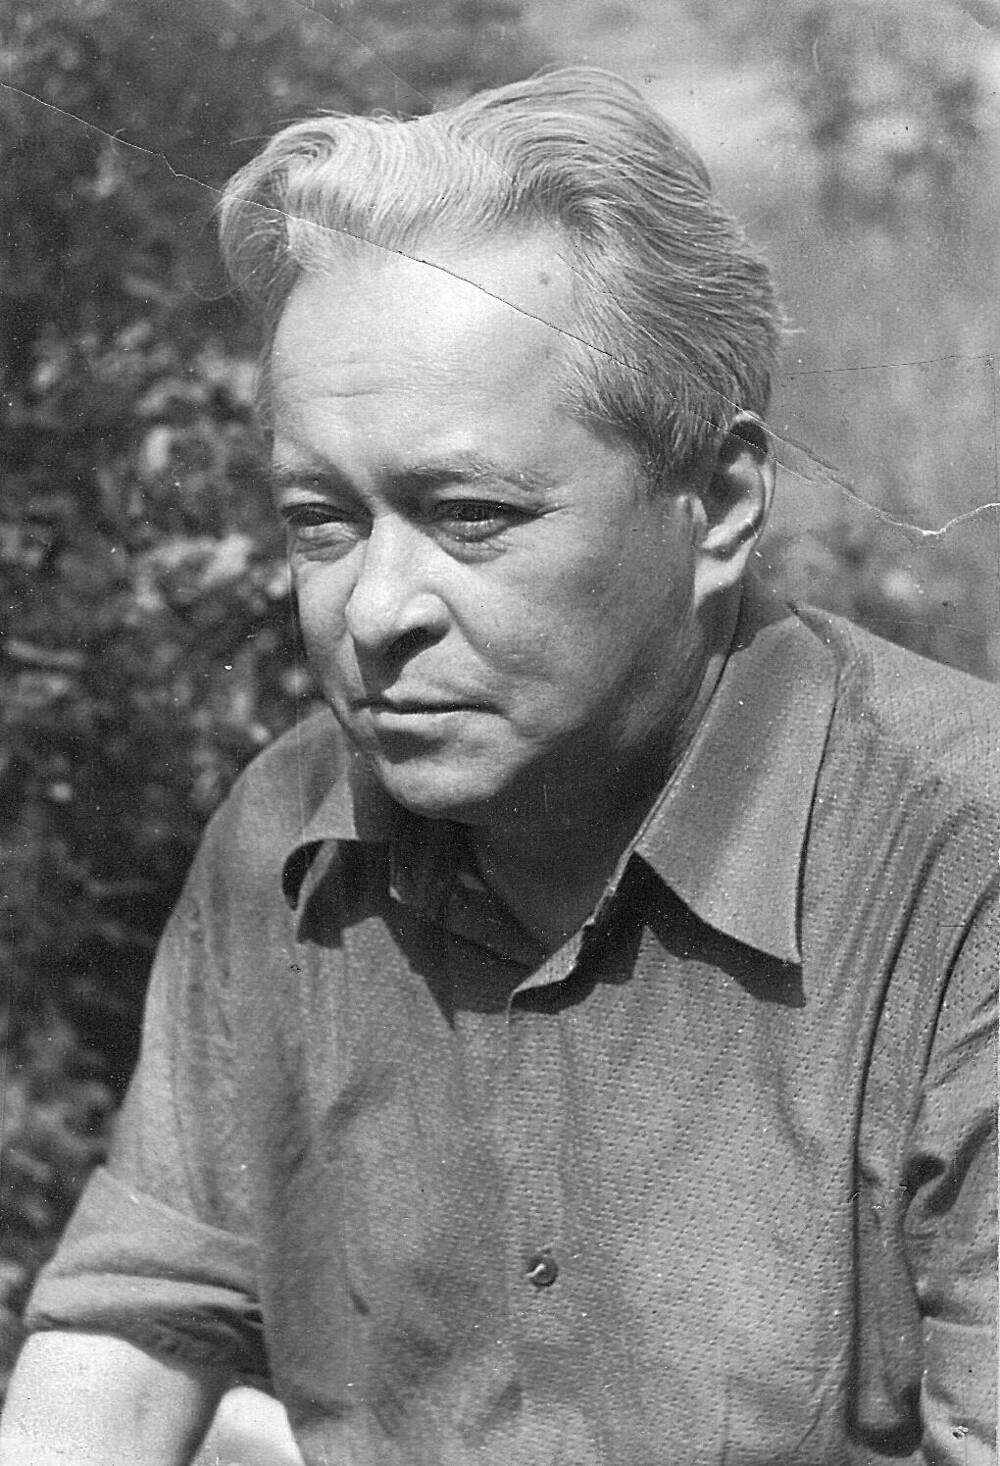 Фотография черно-белая Нечаева Василия Павловича, ветерана Великой Отечественной войны 1941-1945 г. г., участника партизанского движения на Ставрополье.